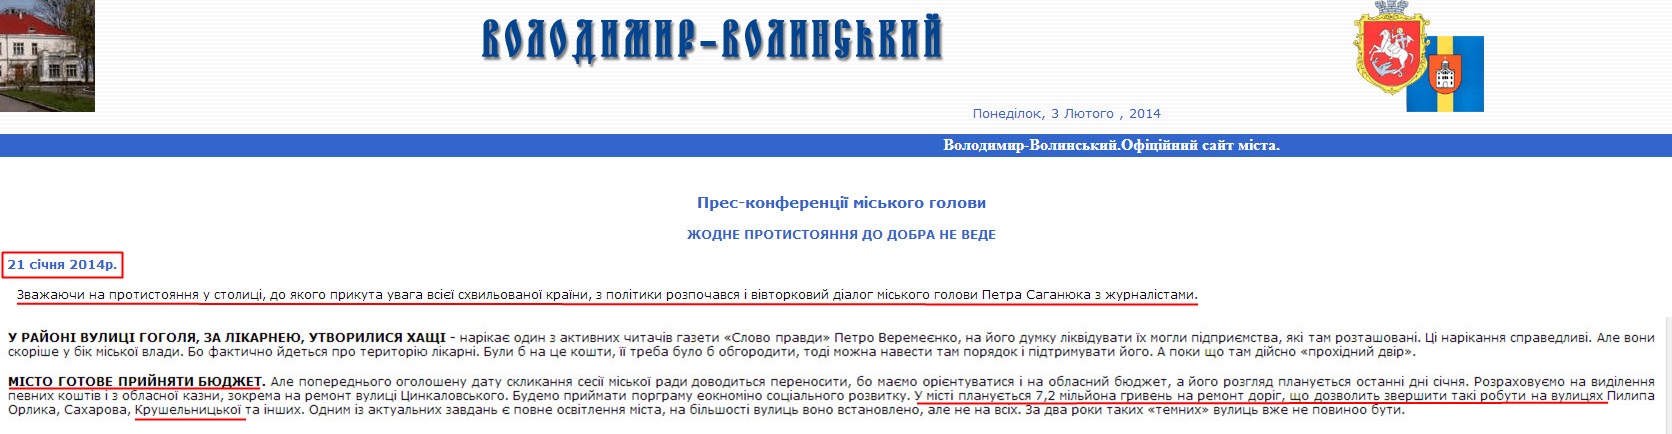 http://www.volodymyrrada.gov.ua/press_konf.htm